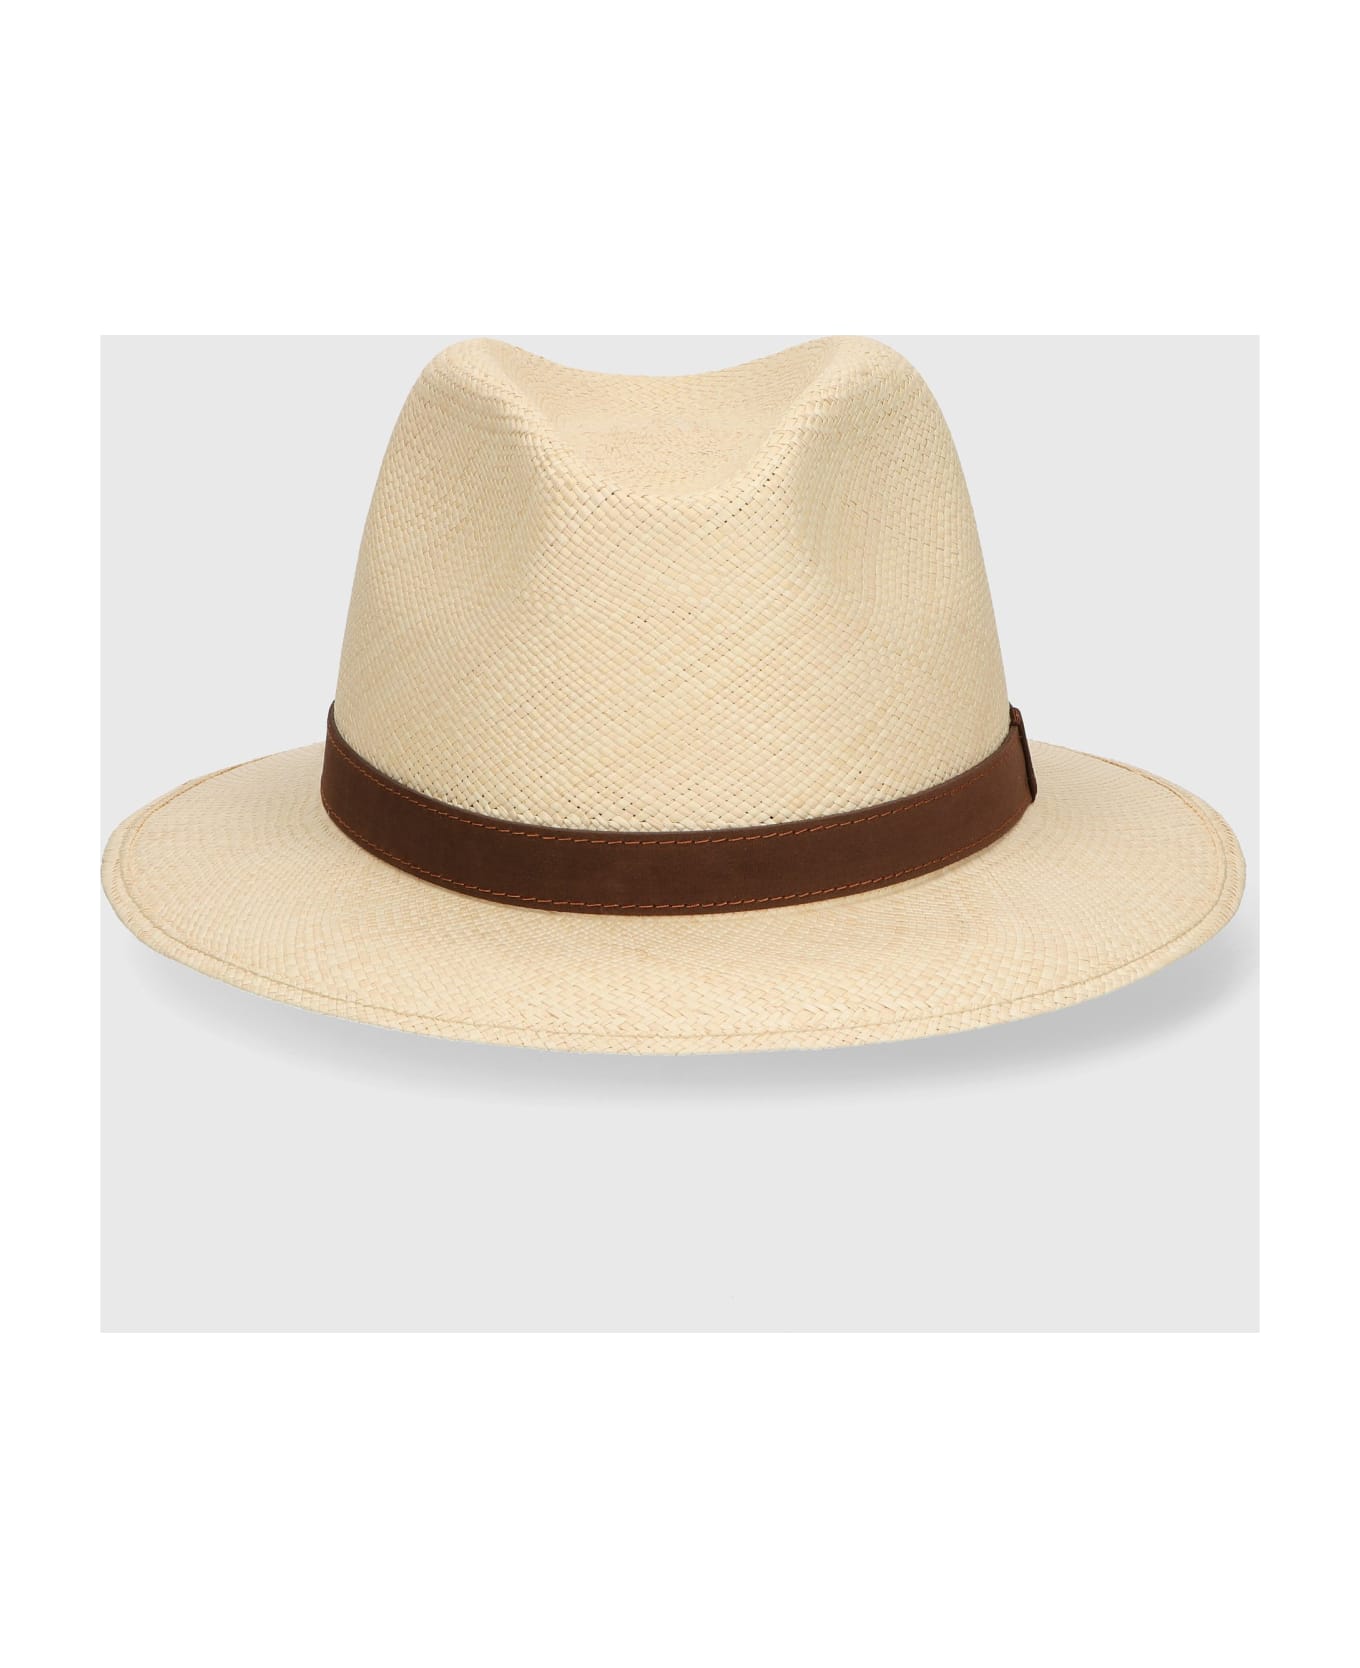 Borsalino Country Panama Quito Medium Brim - NATURAL, DARK BROWN HAT BAND 帽子